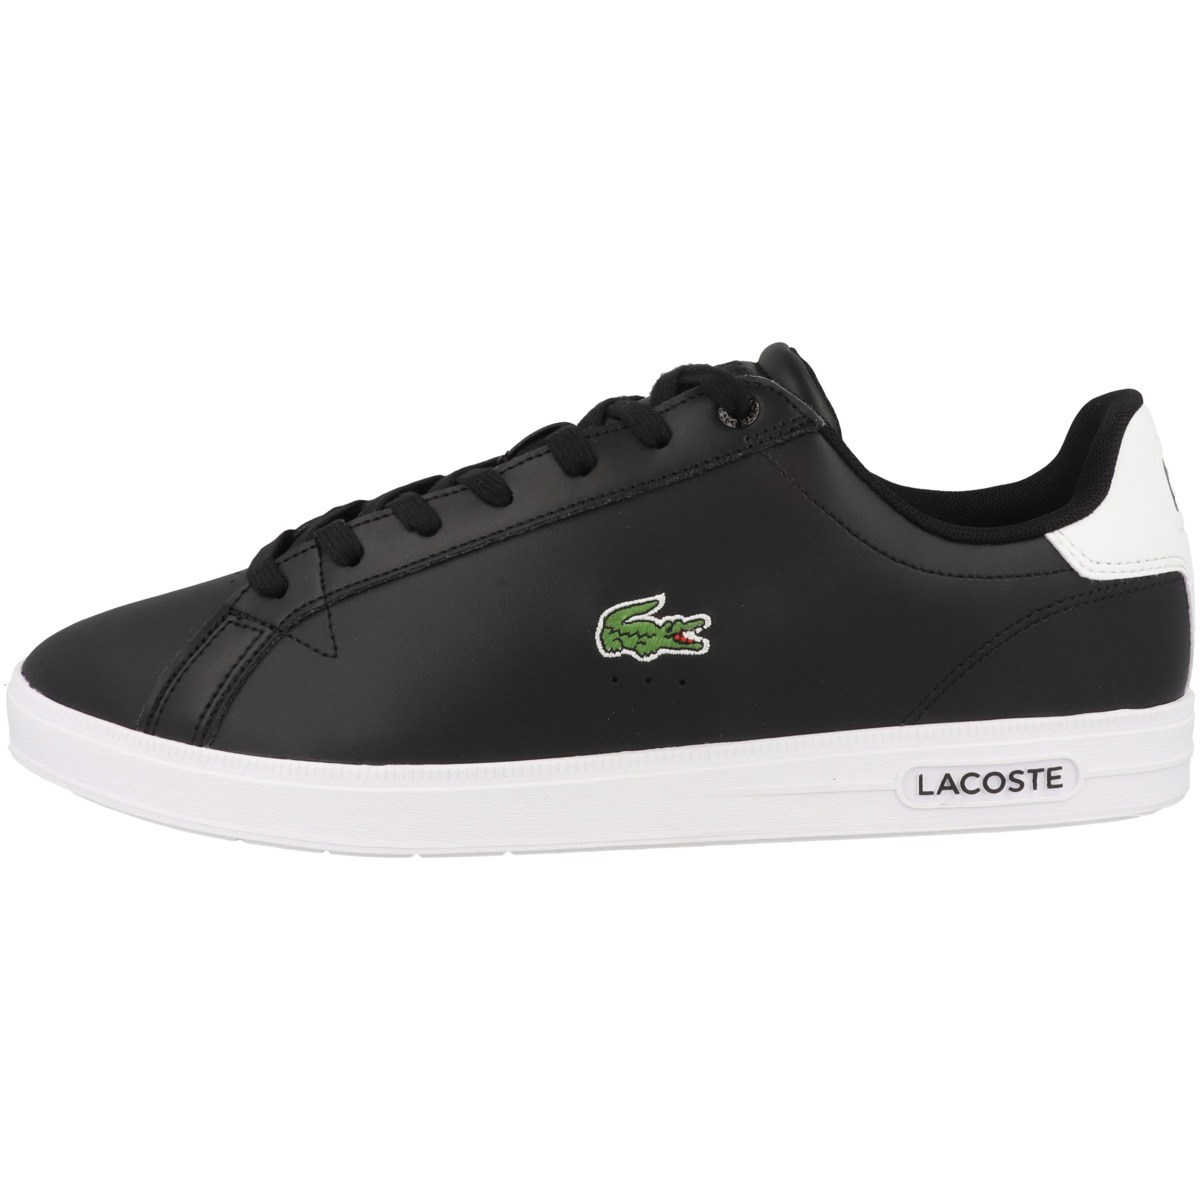 Lacoste Graduate Pro 222 1 SMA Sneaker low